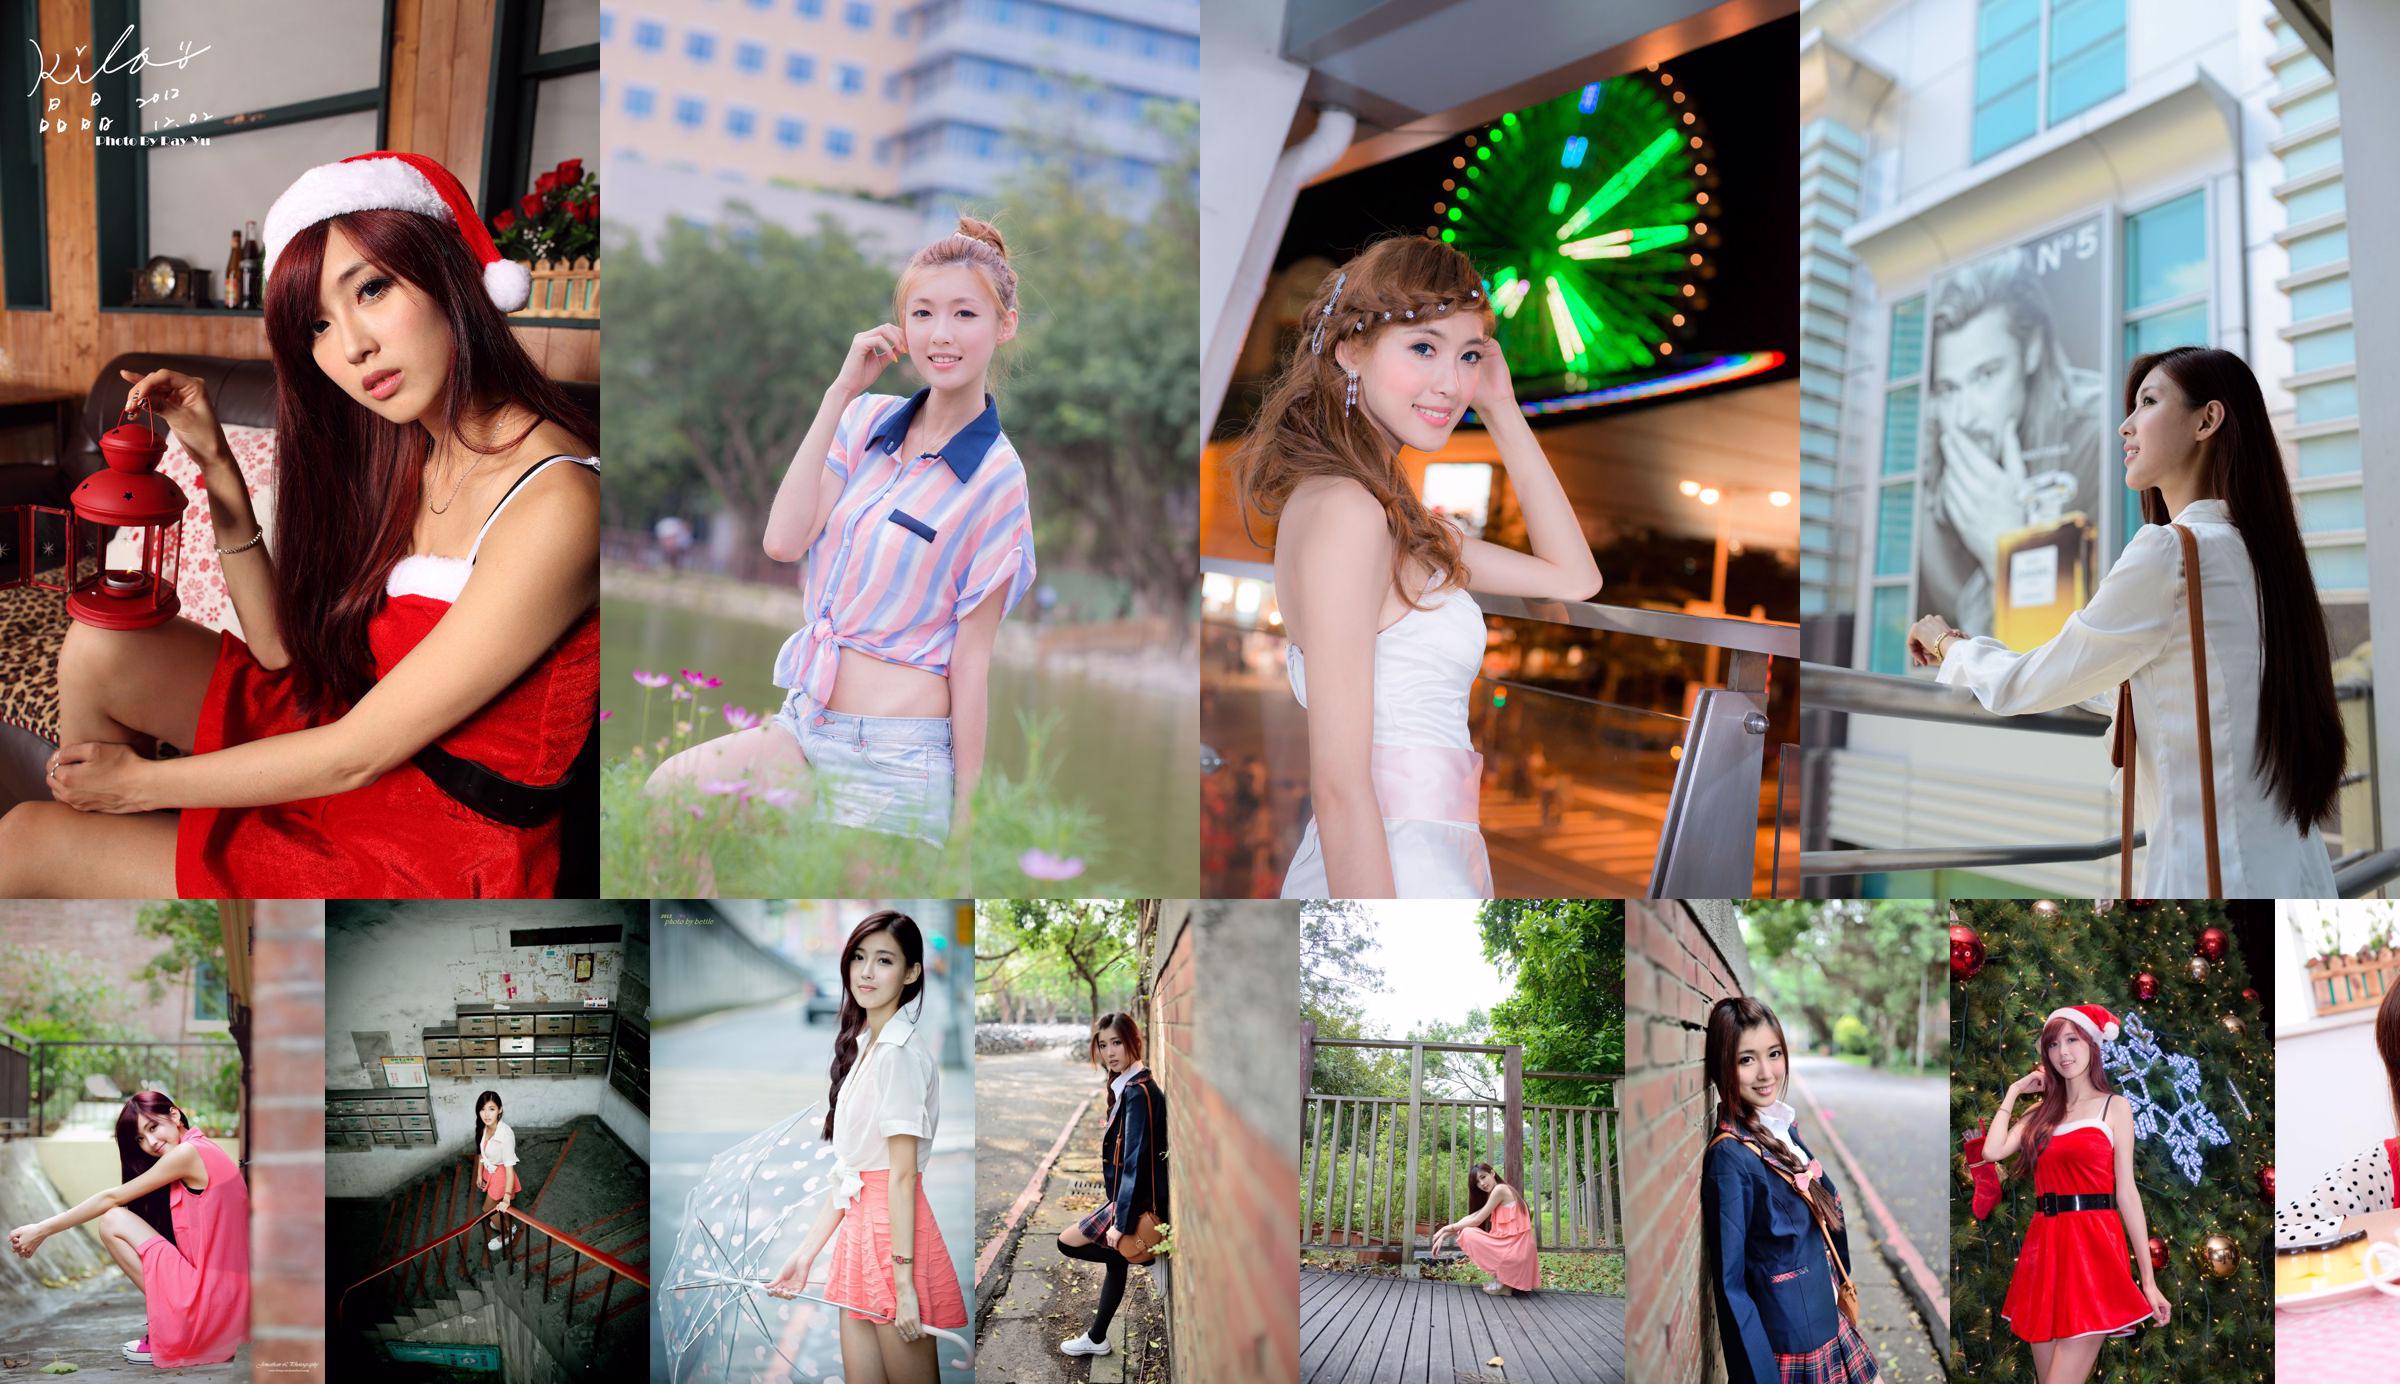 Liao Tingling/Kila Jingjing "Qi B Mini Skirt Series" outdoor shooting No.d62cbe Page 2